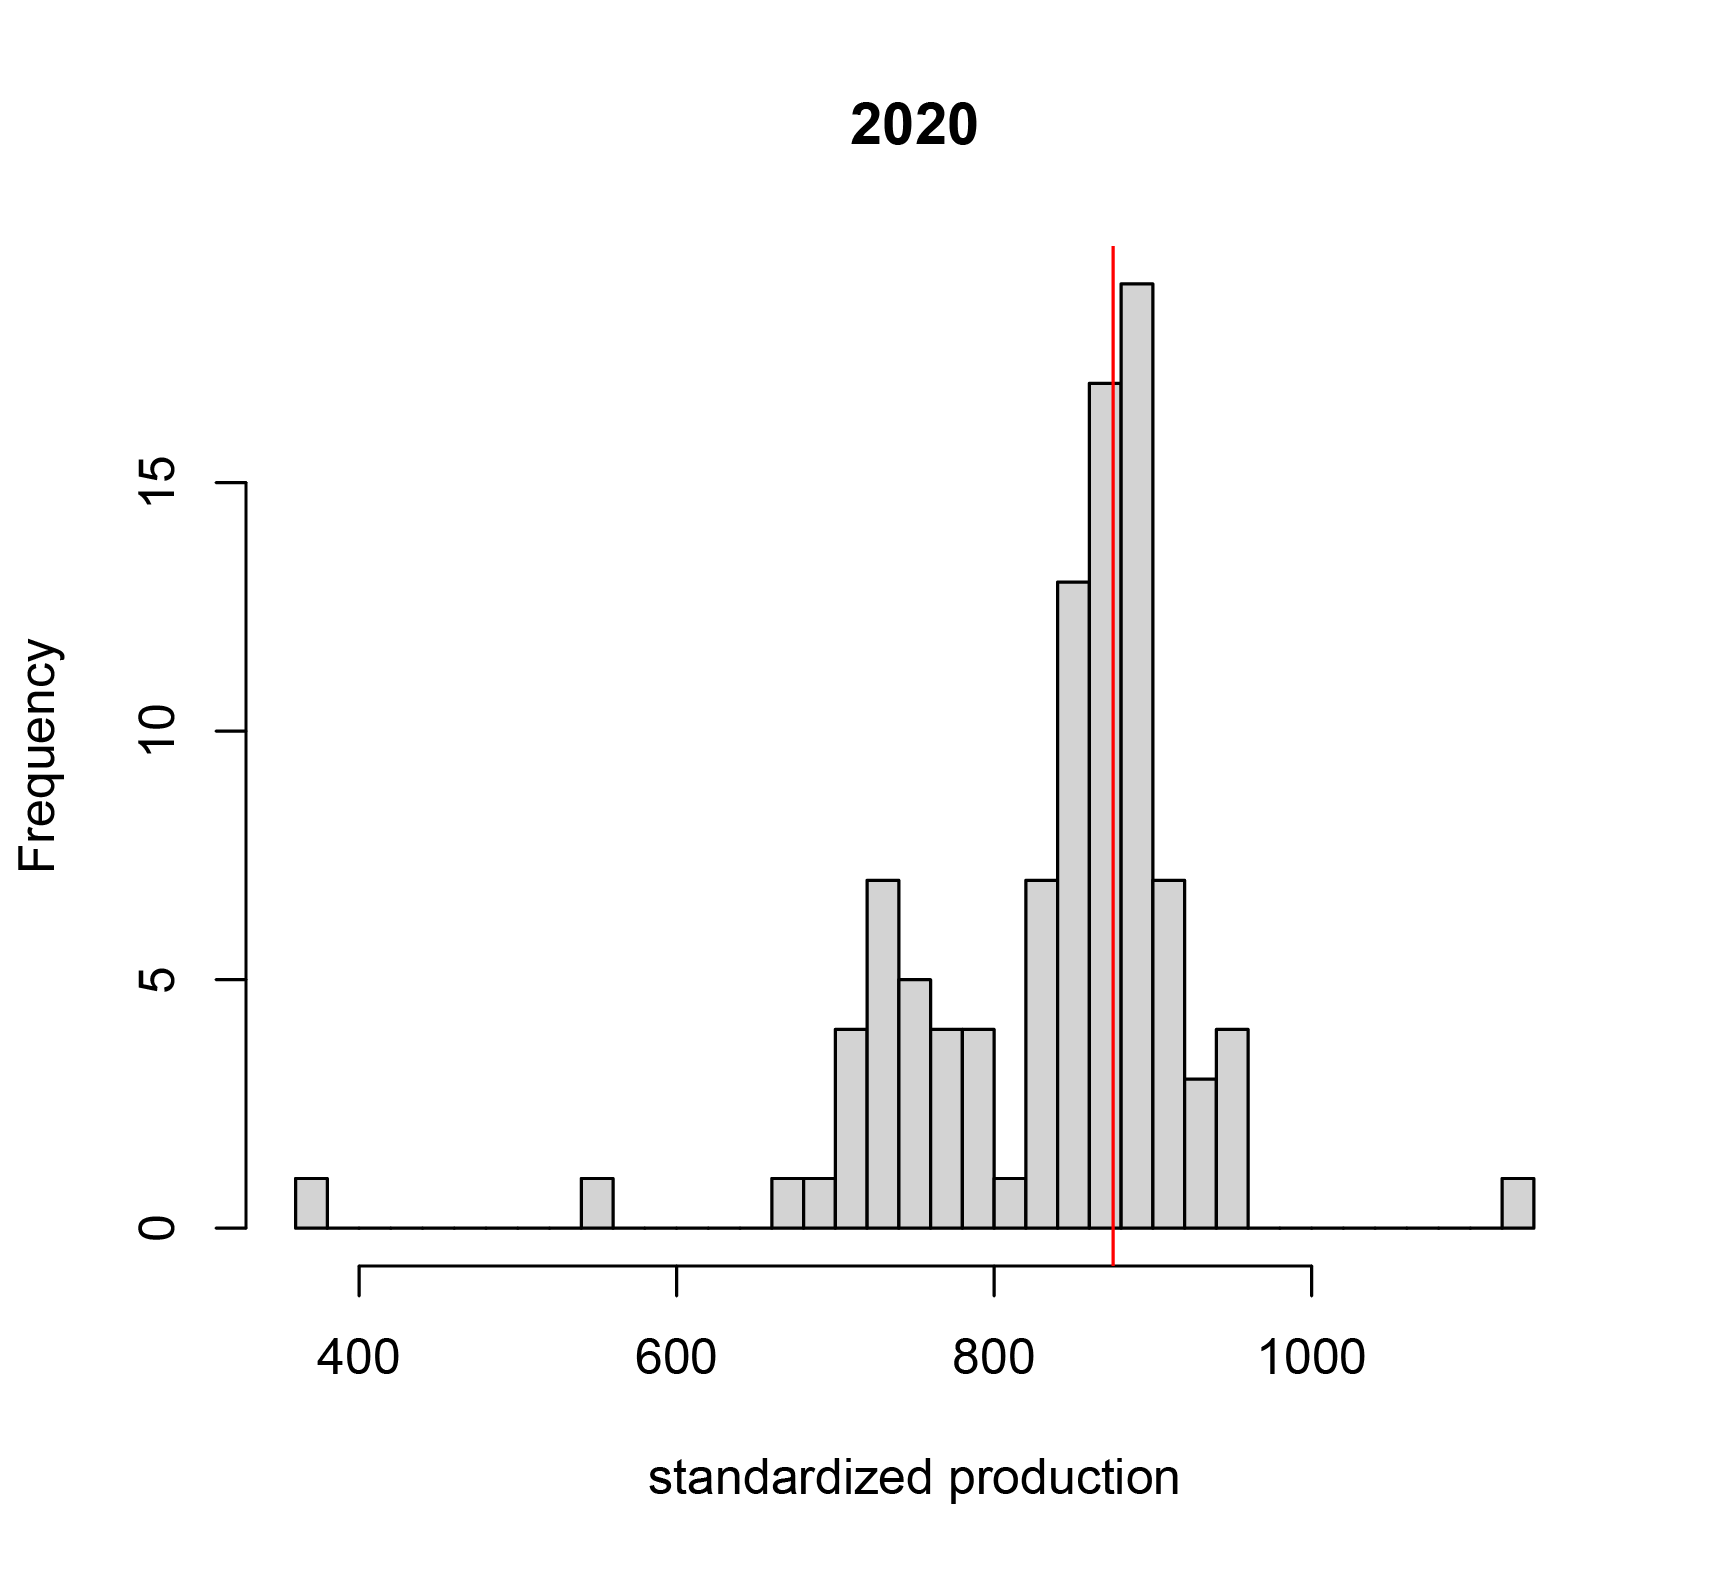 Histogram teruggerekende kengetallen voor 2020 op basis van 100 installaties van Sundata. De verticale rode lijn geeft een het huidige kengetal van 875 kWh/kWp weer.